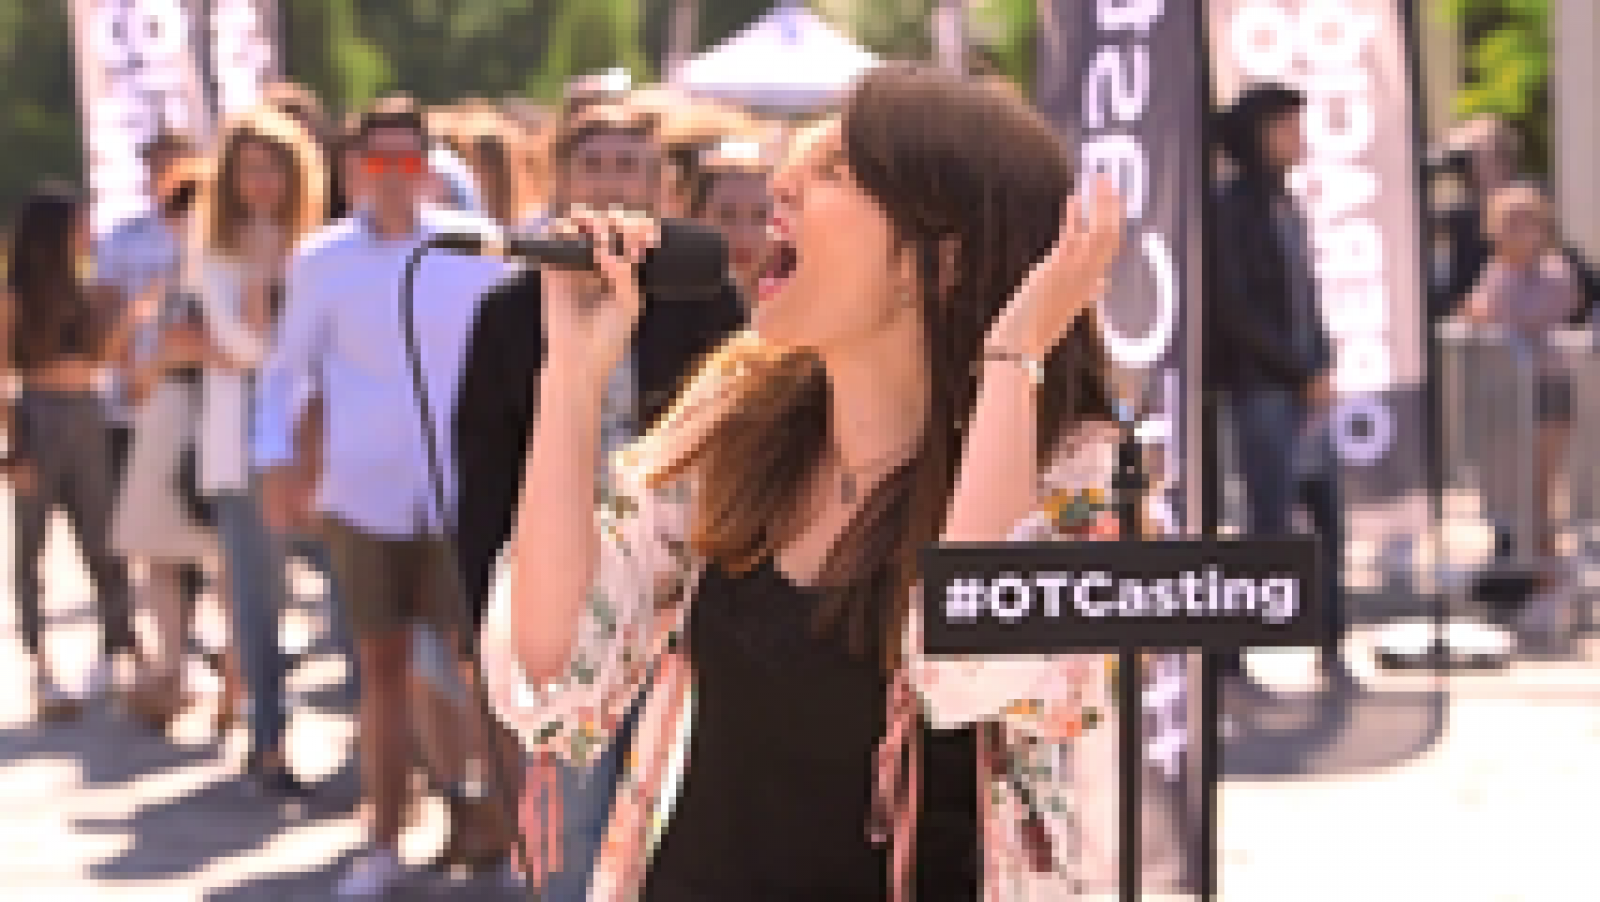 OT Casting - Voz e interpretación en el casting de Santiago 